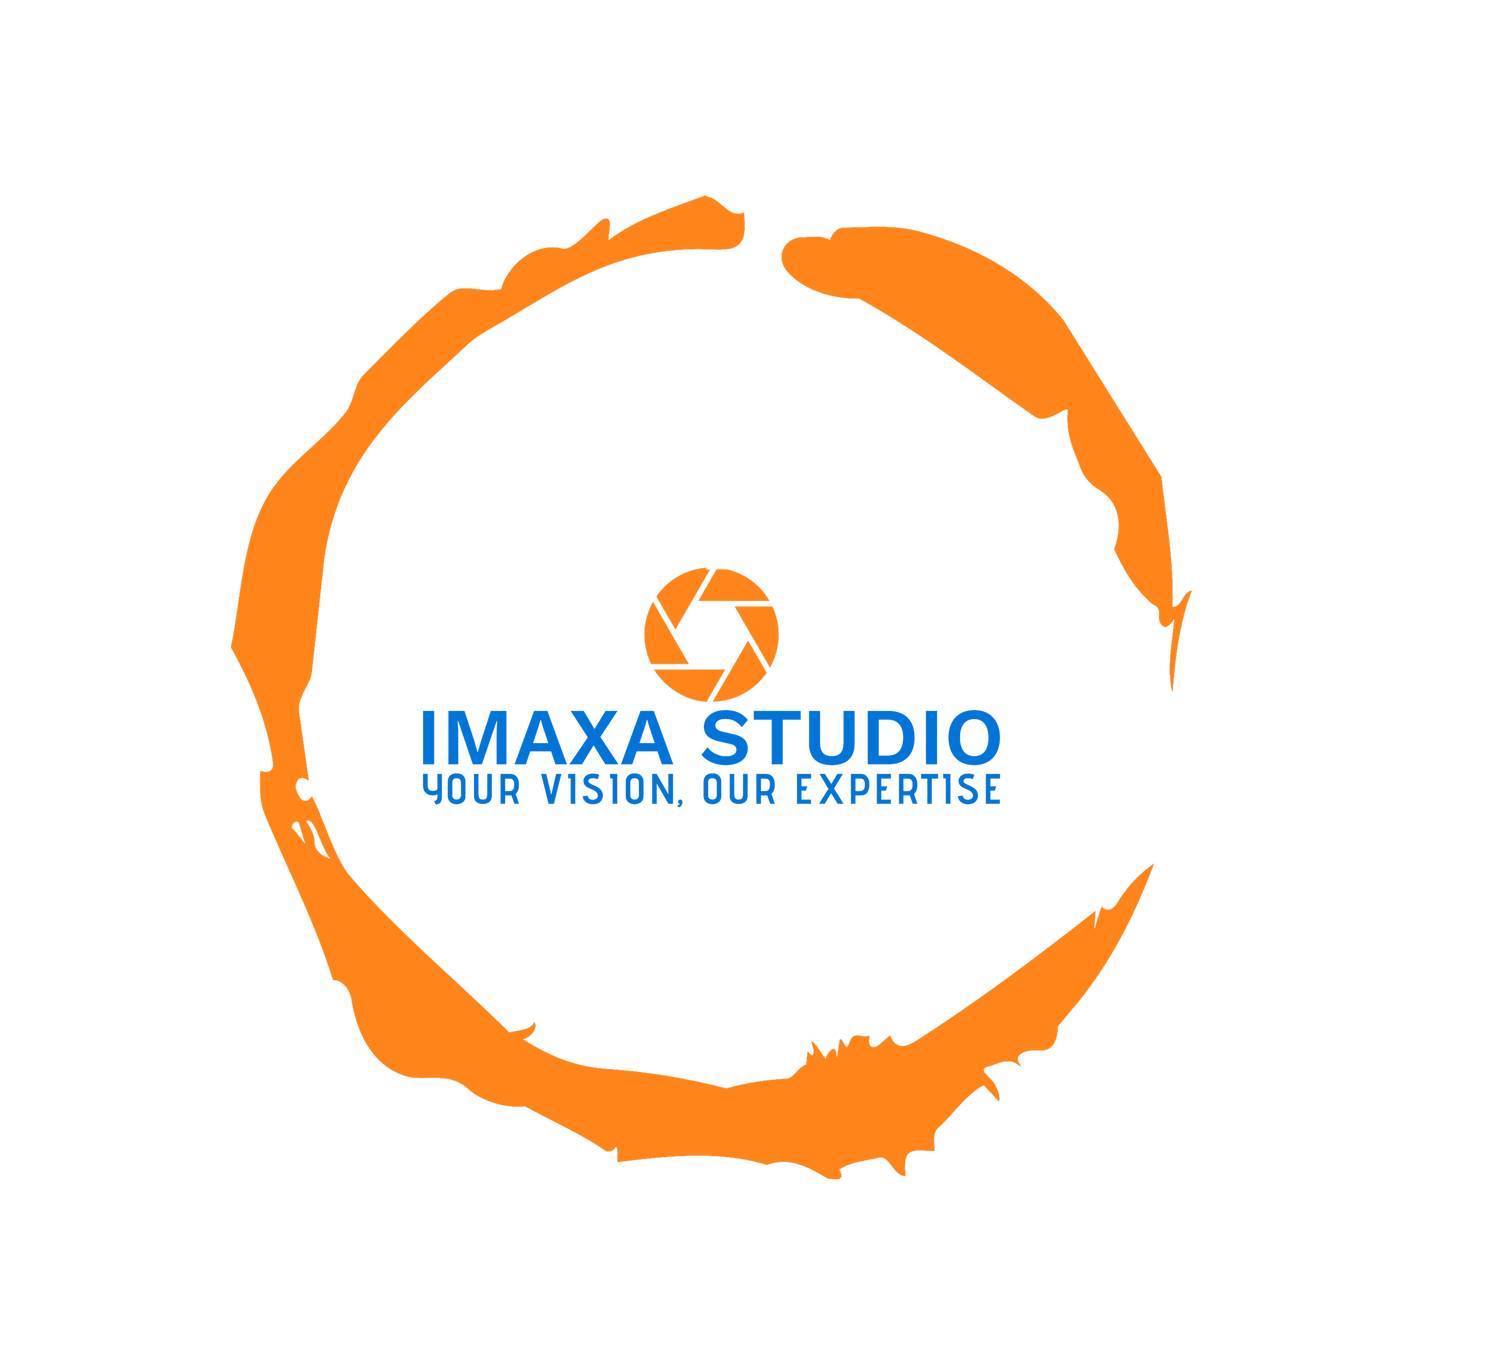 IMAXA STUDIO